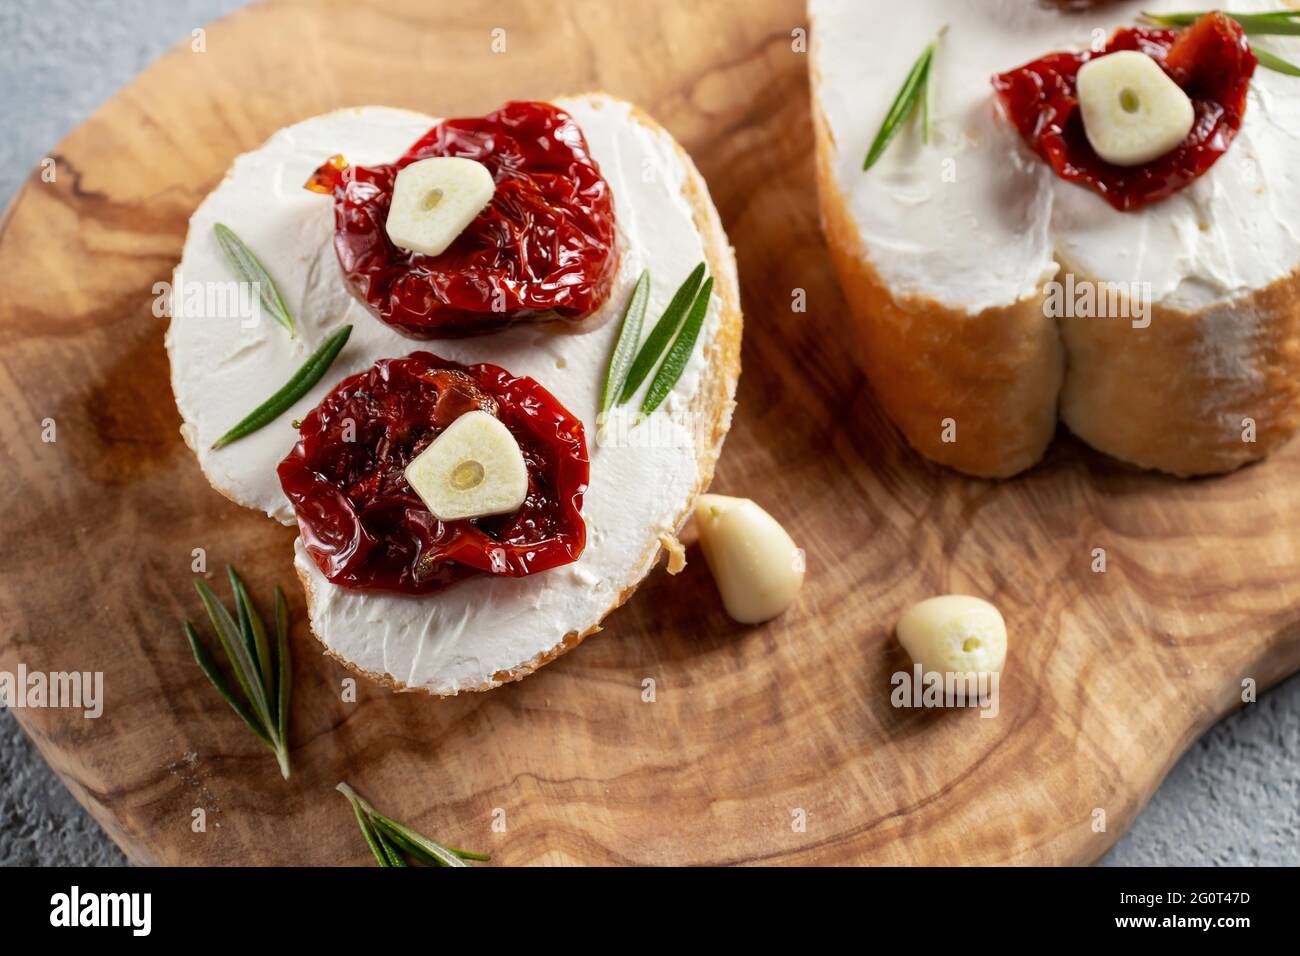 Sandwichs maison avec fromage à la crème et tomates séchées sur un plateau d'olives en bois - délicieux petit déjeuner sain, cuisine italienne. Banque D'Images